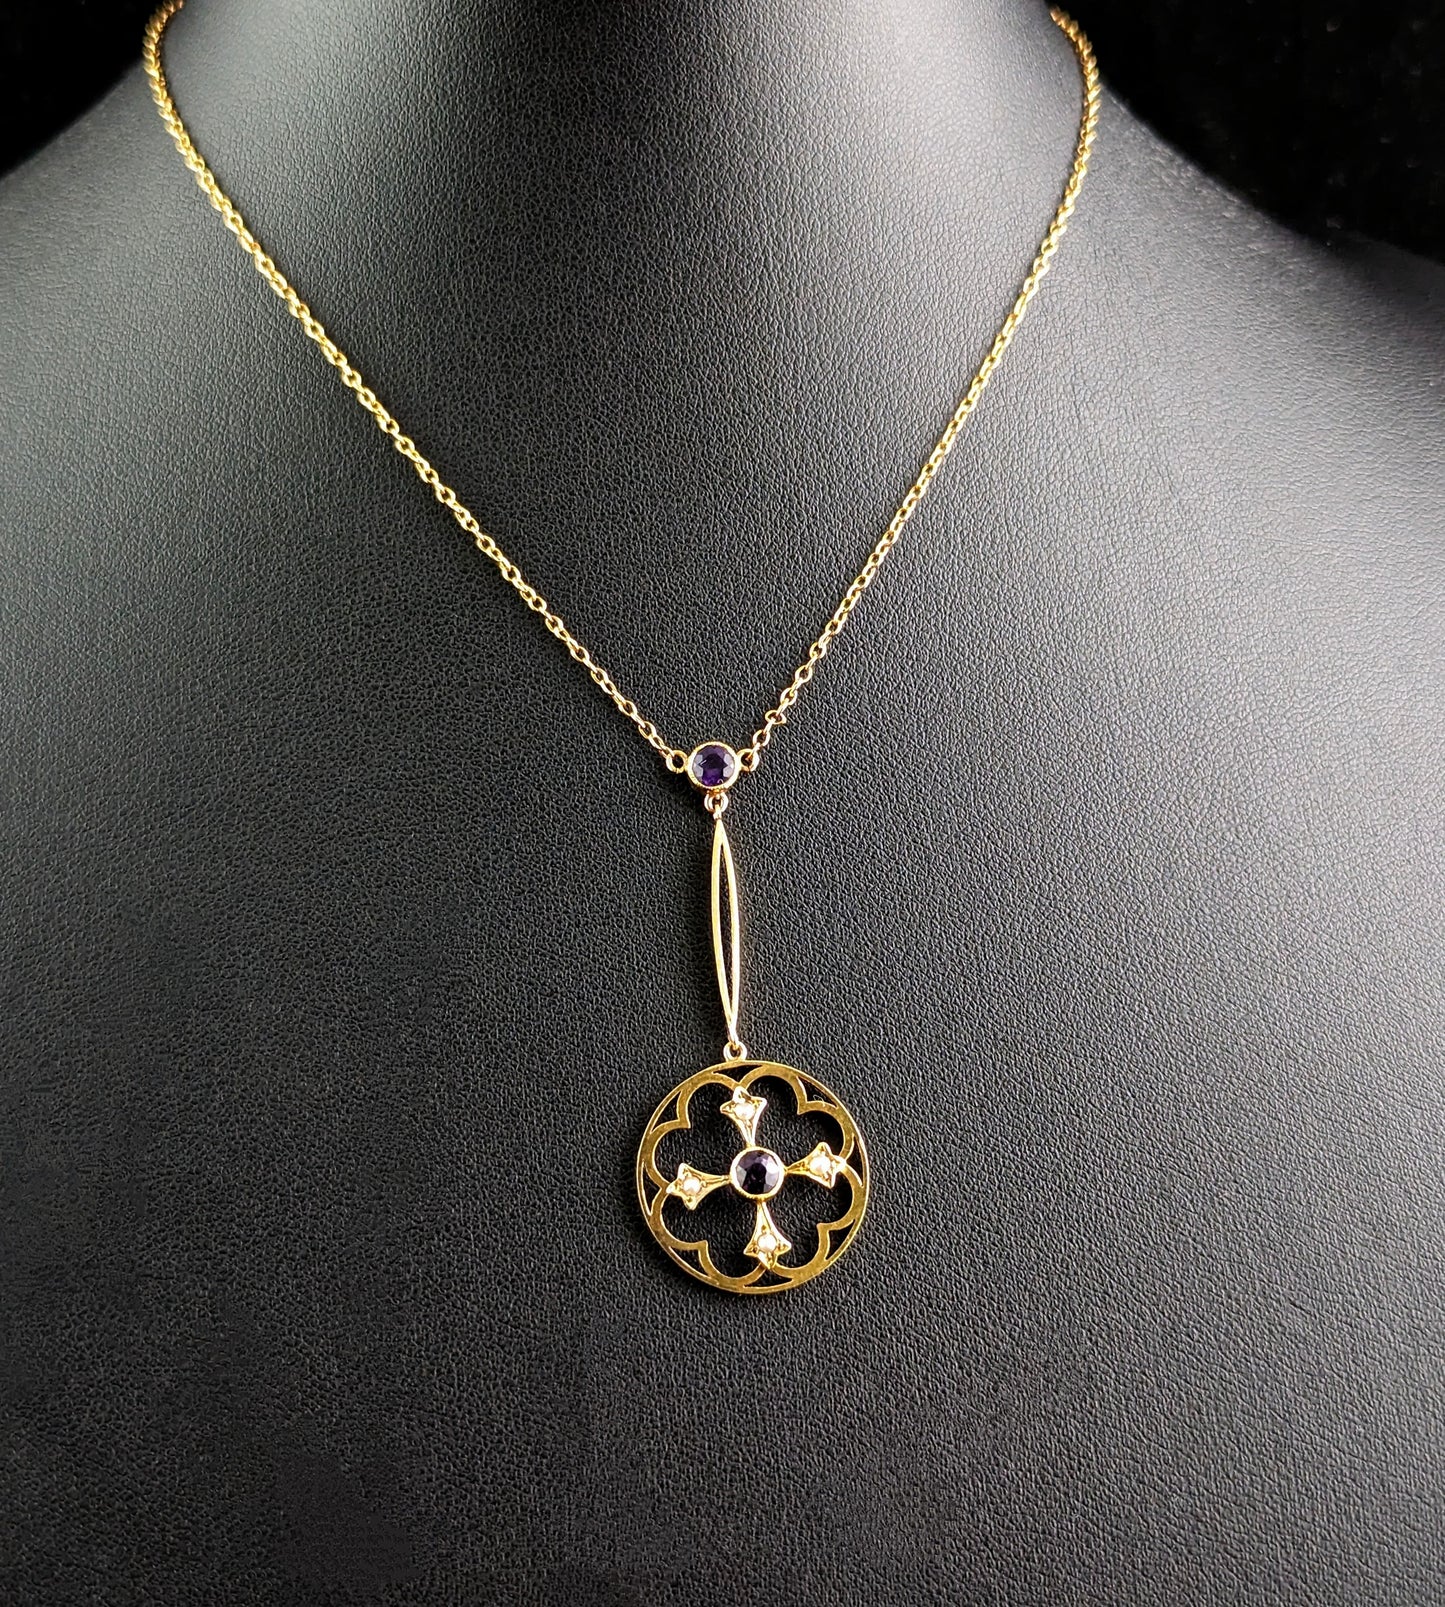 Antique Art Nouveau pendant necklace, Amethyst and Pearl, 9ct gold